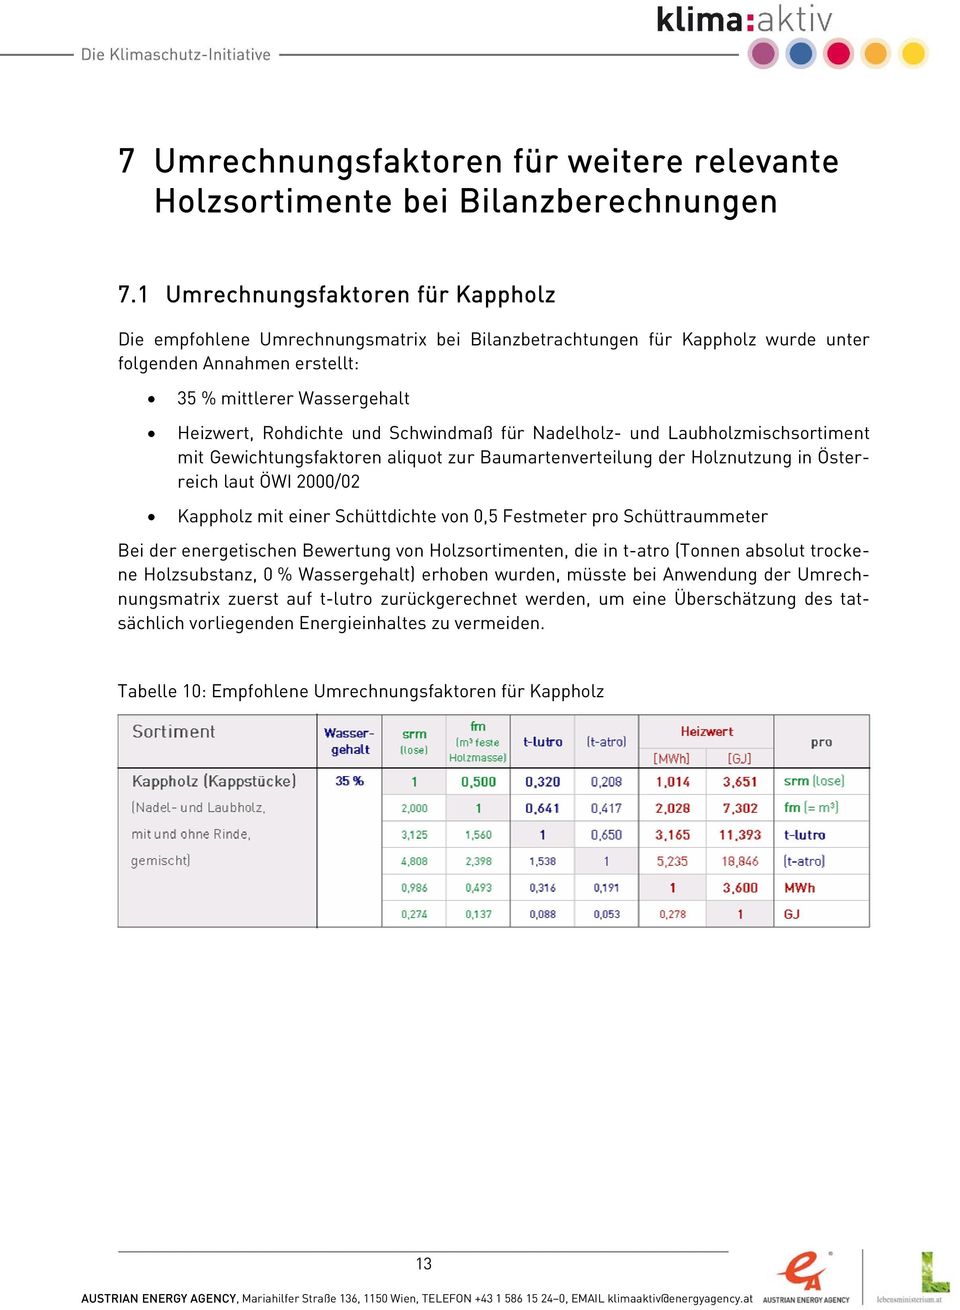 Schwindmaß für Nadelholz- und Laubholzmischsortiment mit Gewichtungsfaktoren aliquot zur Baumartenverteilung der Holznutzung in Österreich laut ÖWI 2000/02 Kappholz mit einer Schüttdichte von 0,5